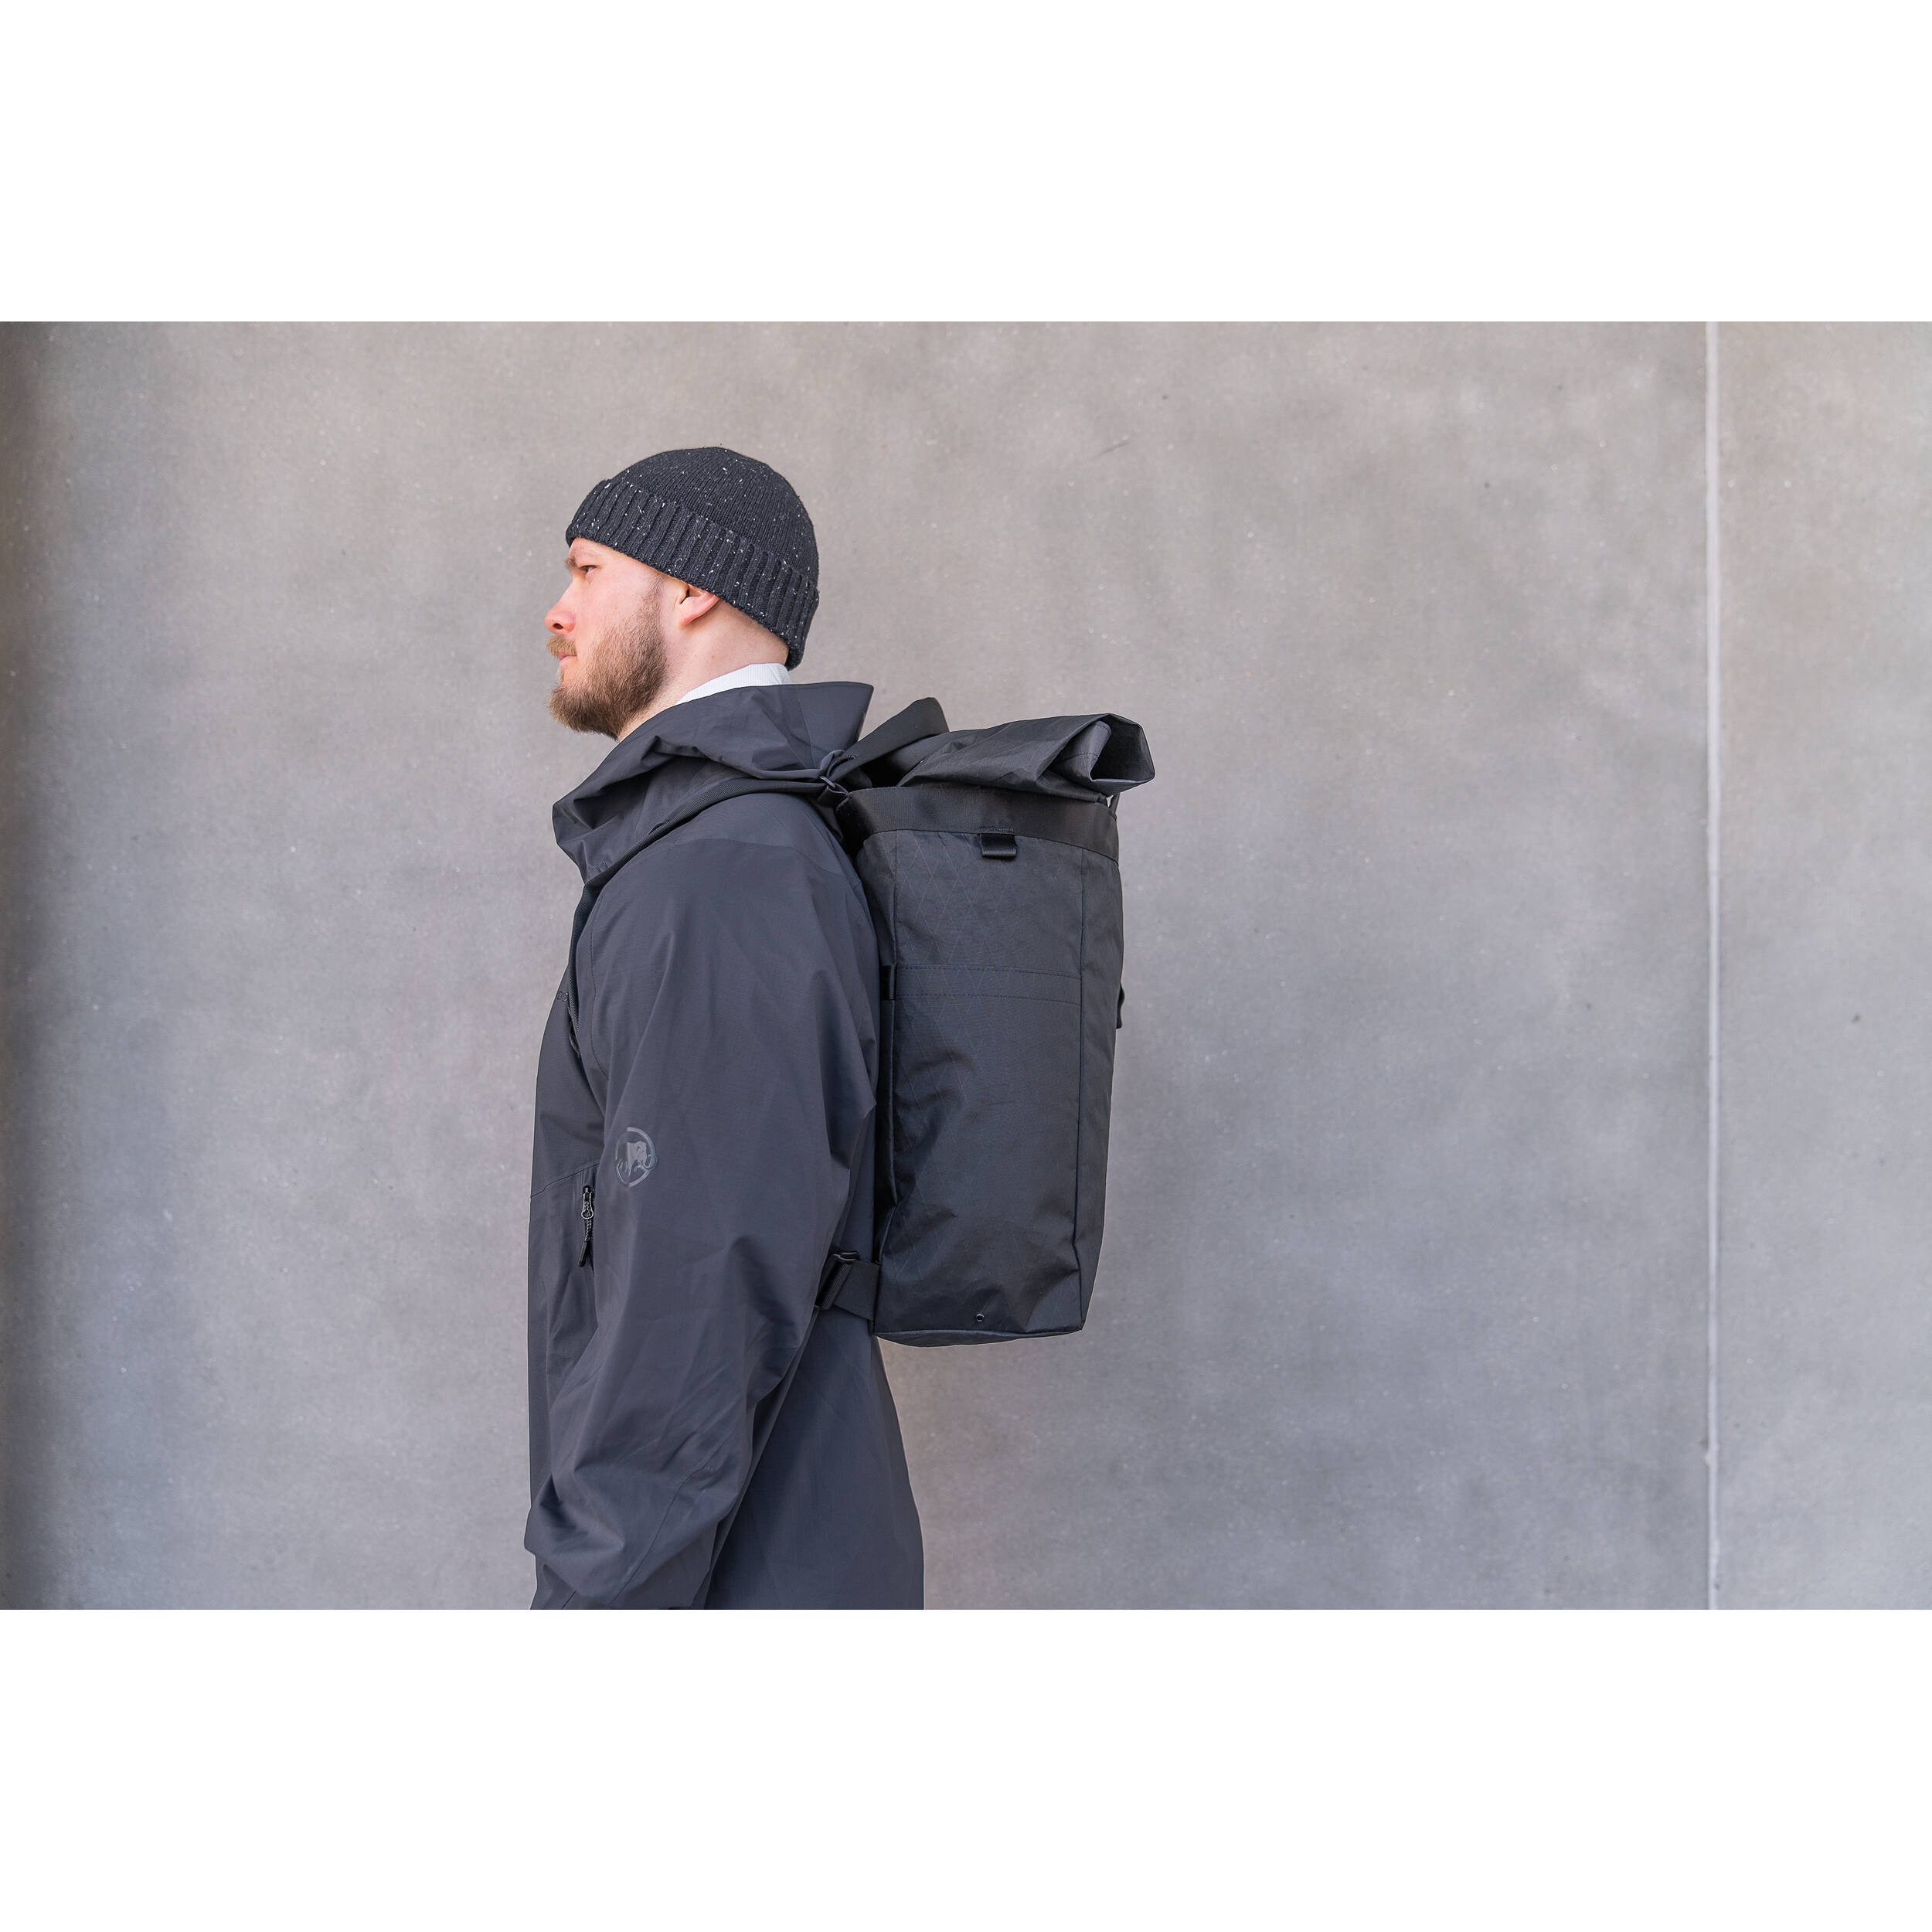 WANDRD Tote Backpack - 20L - Black